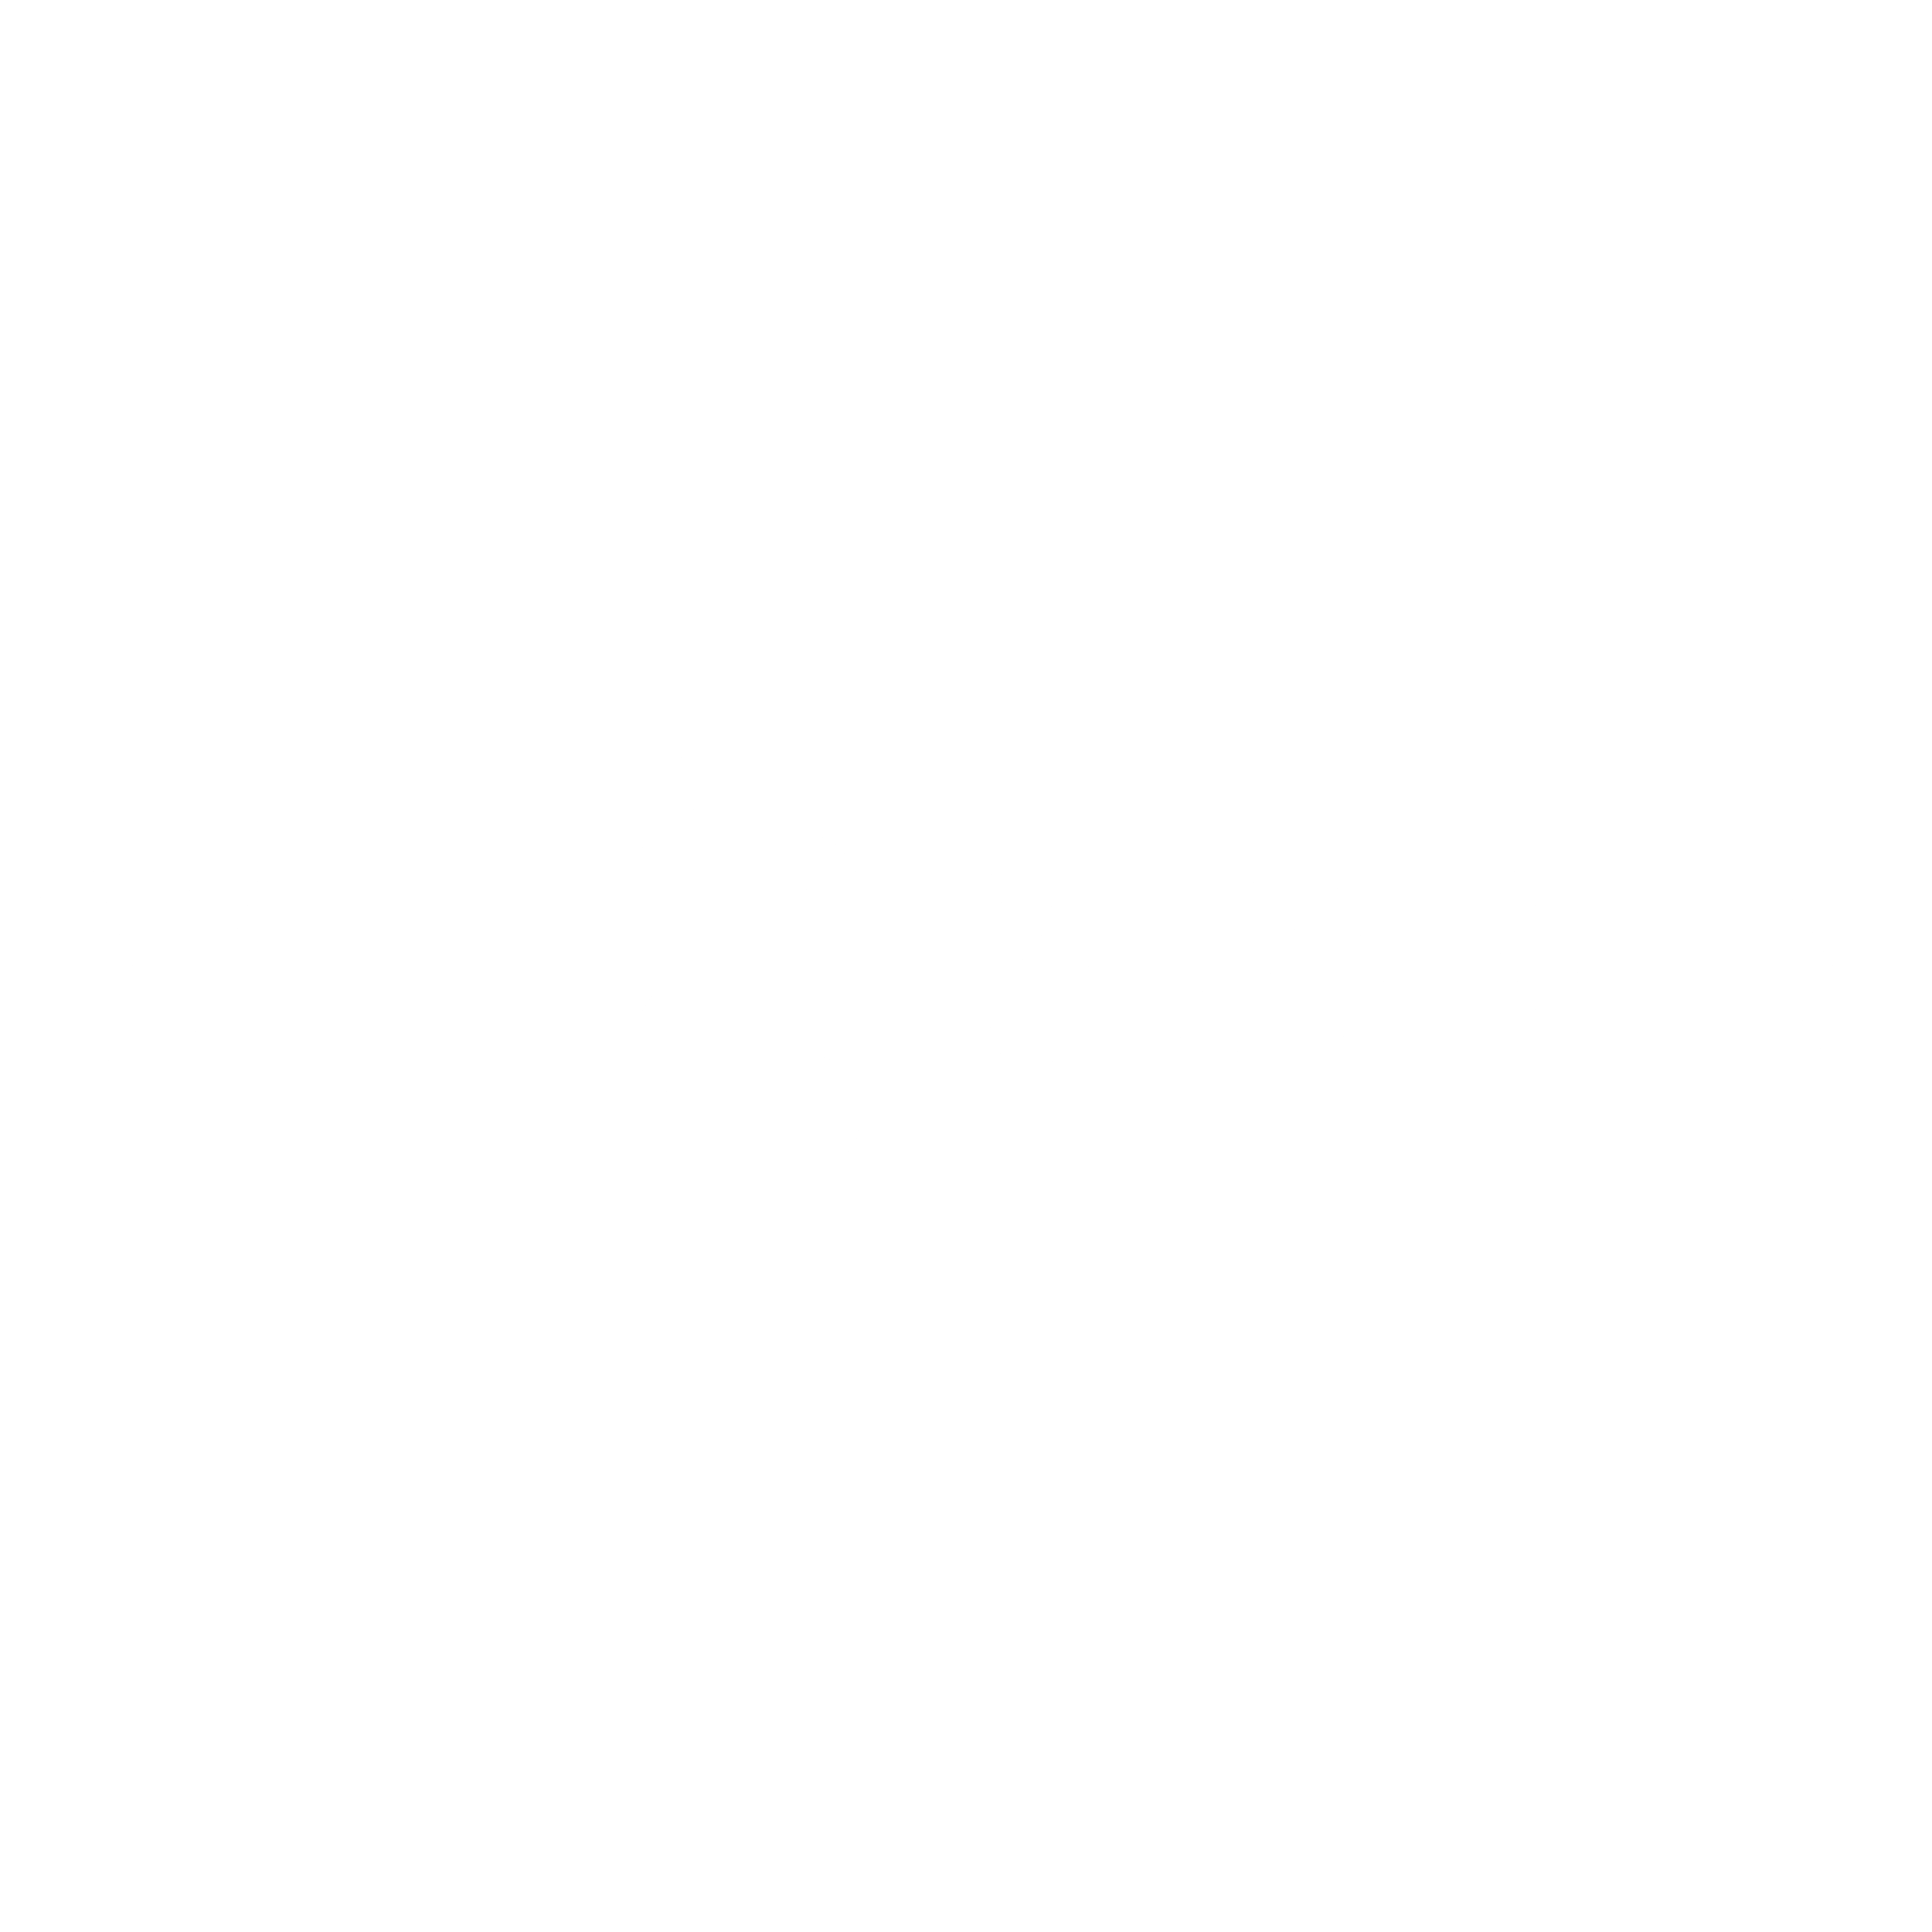 Viessmann Logo - Viessmann Logo PNG Transparent & SVG Vector